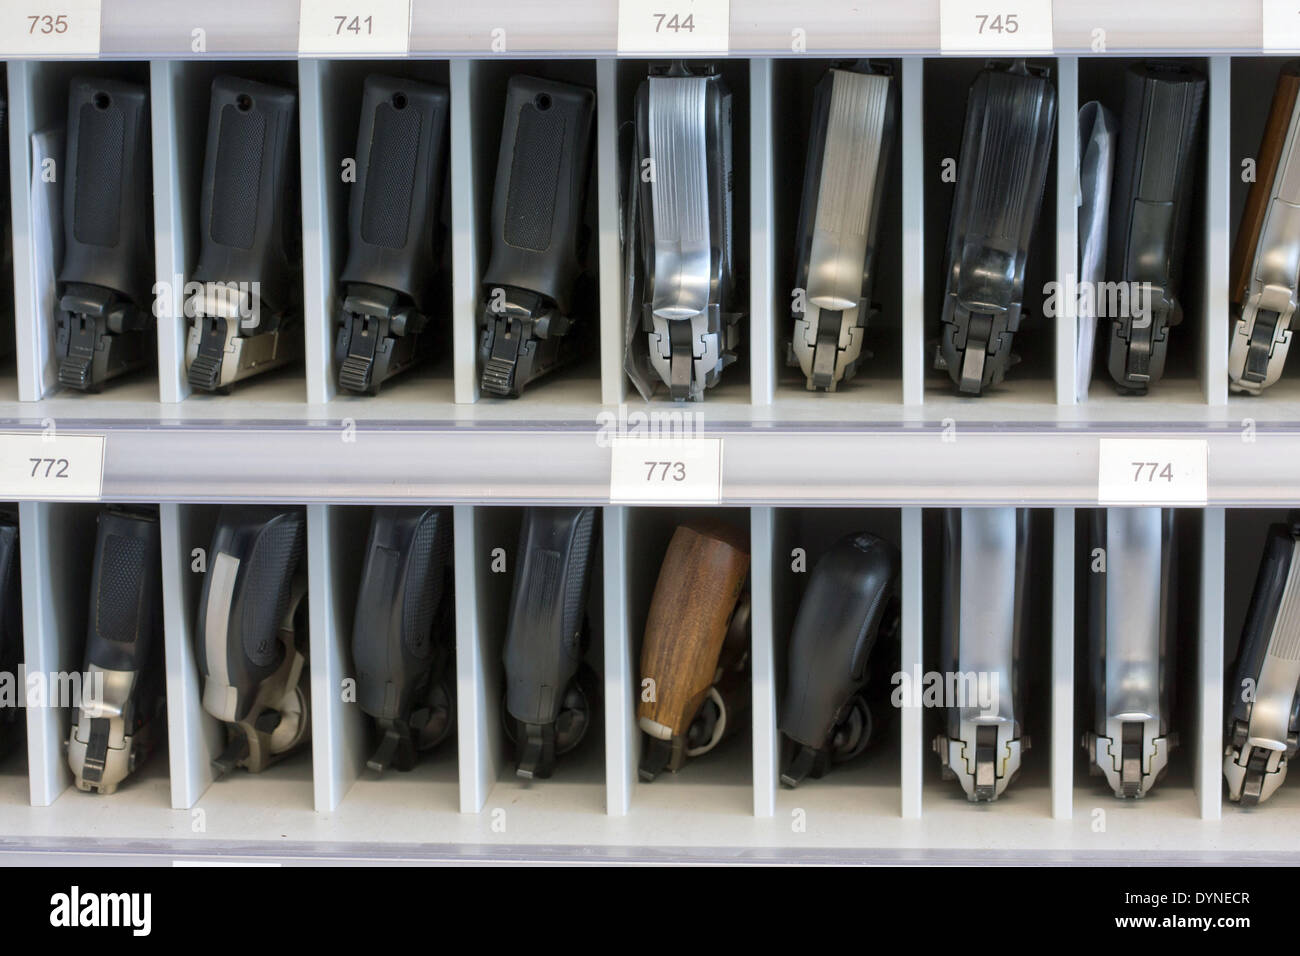 Deutsche Text: Kleine Waffe in Deutschland ermöglicht die Schrotflinte und gas  Pistolen Stockfotografie - Alamy